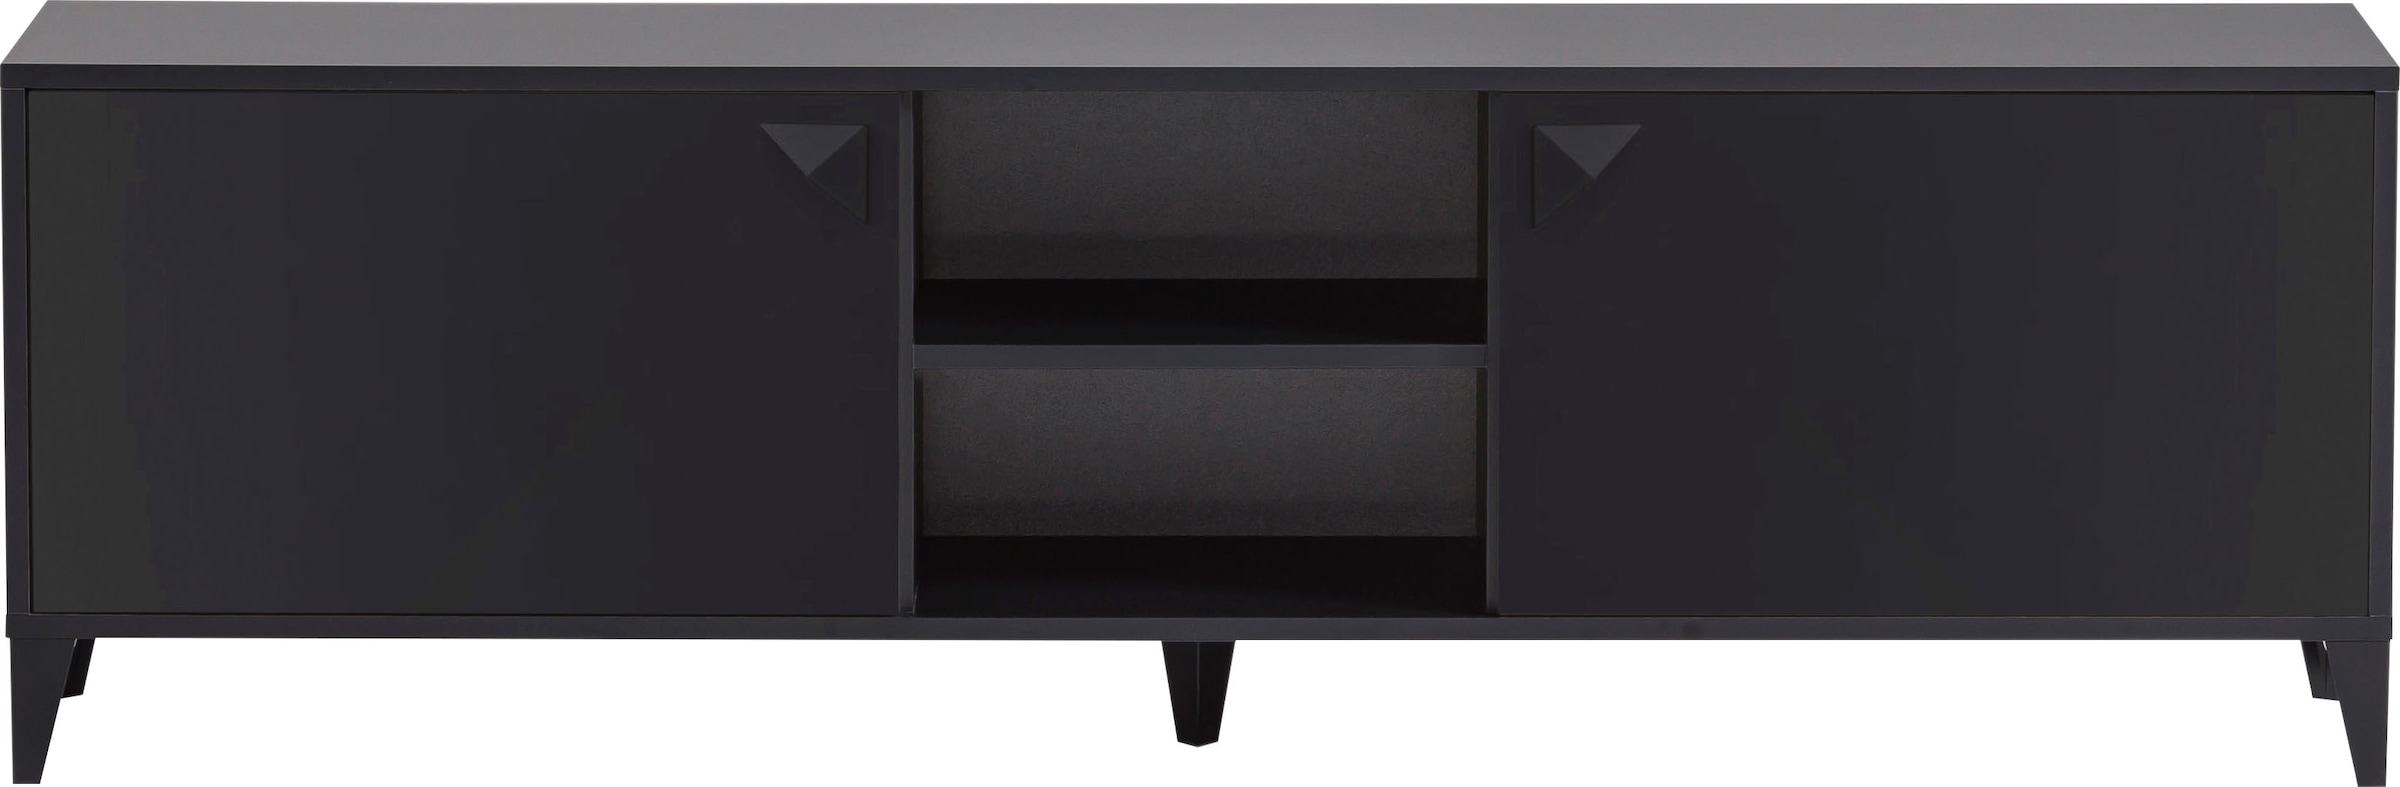 TV-Board »Looks Classic«, Mit hochwertigen Metallbeschlägen und Softclose-Scharnieren